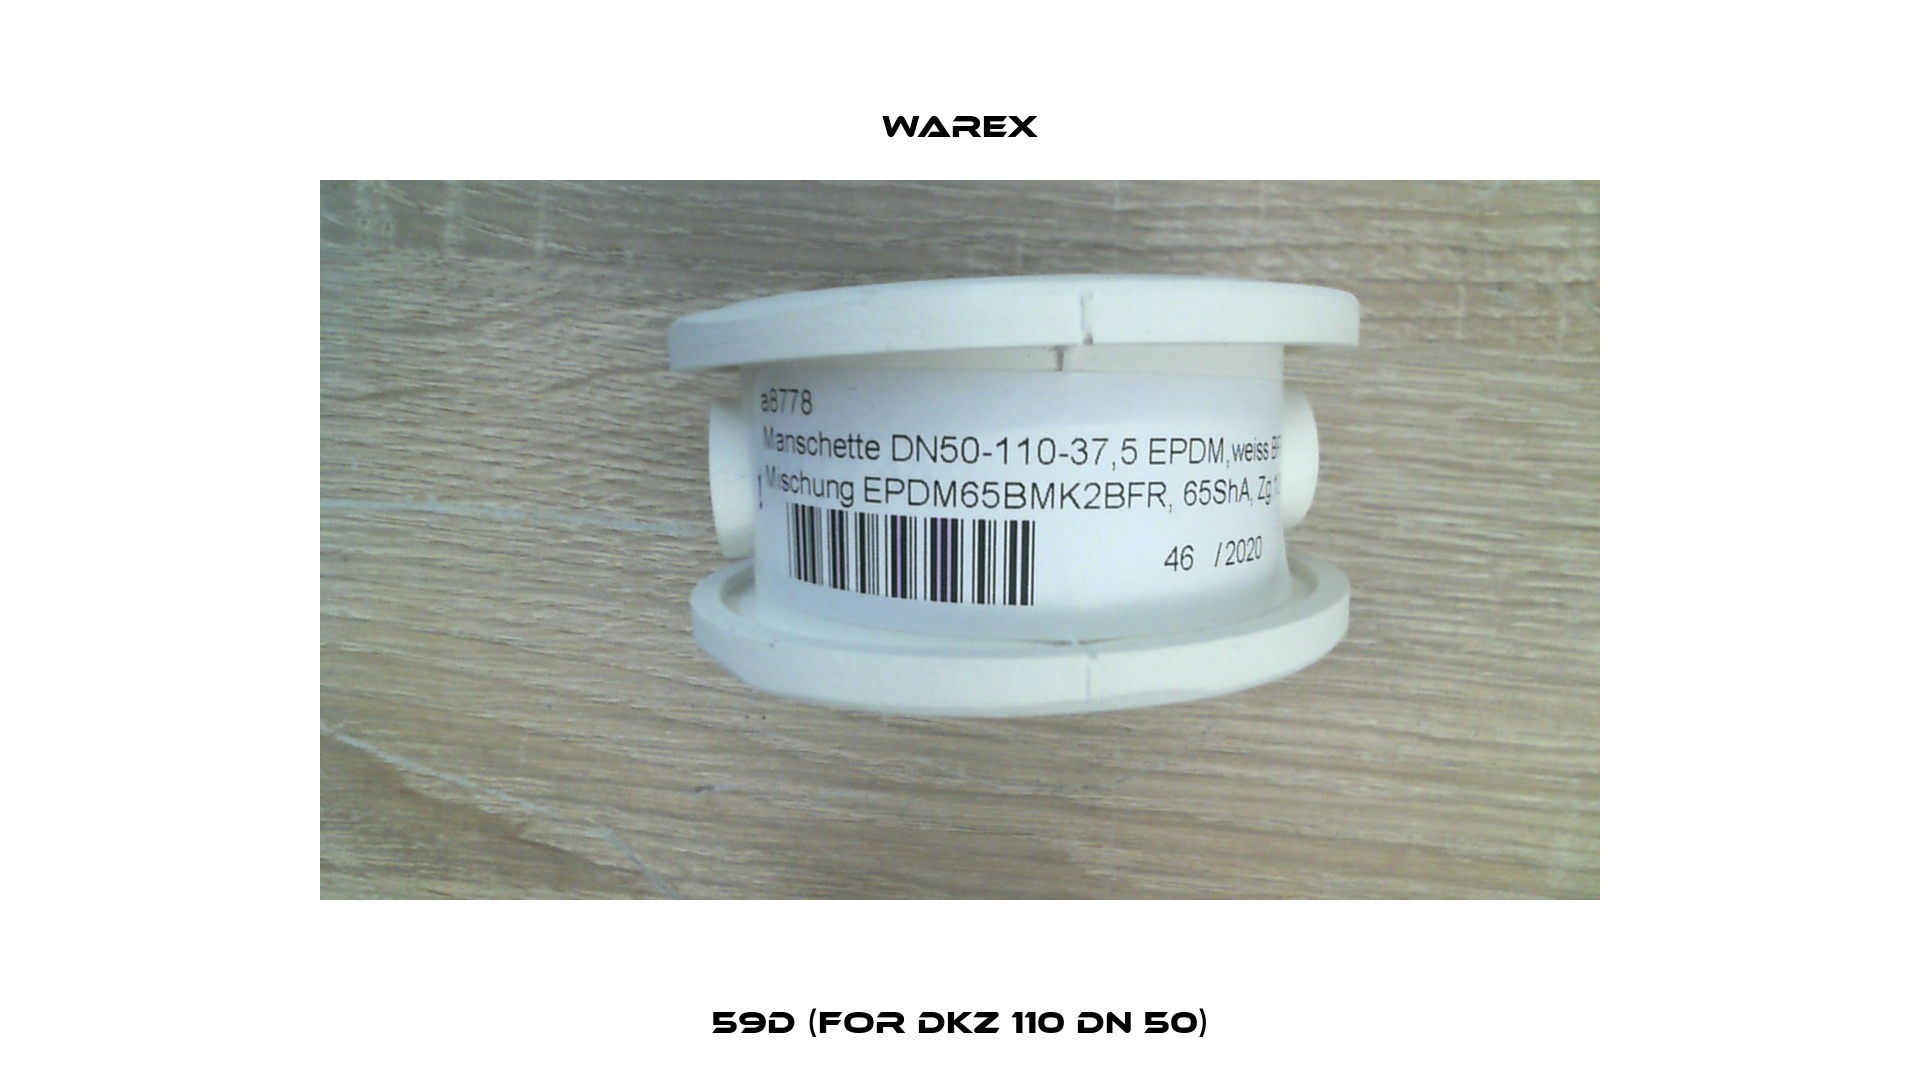 59D (for DKZ 110 DN 50) Warex